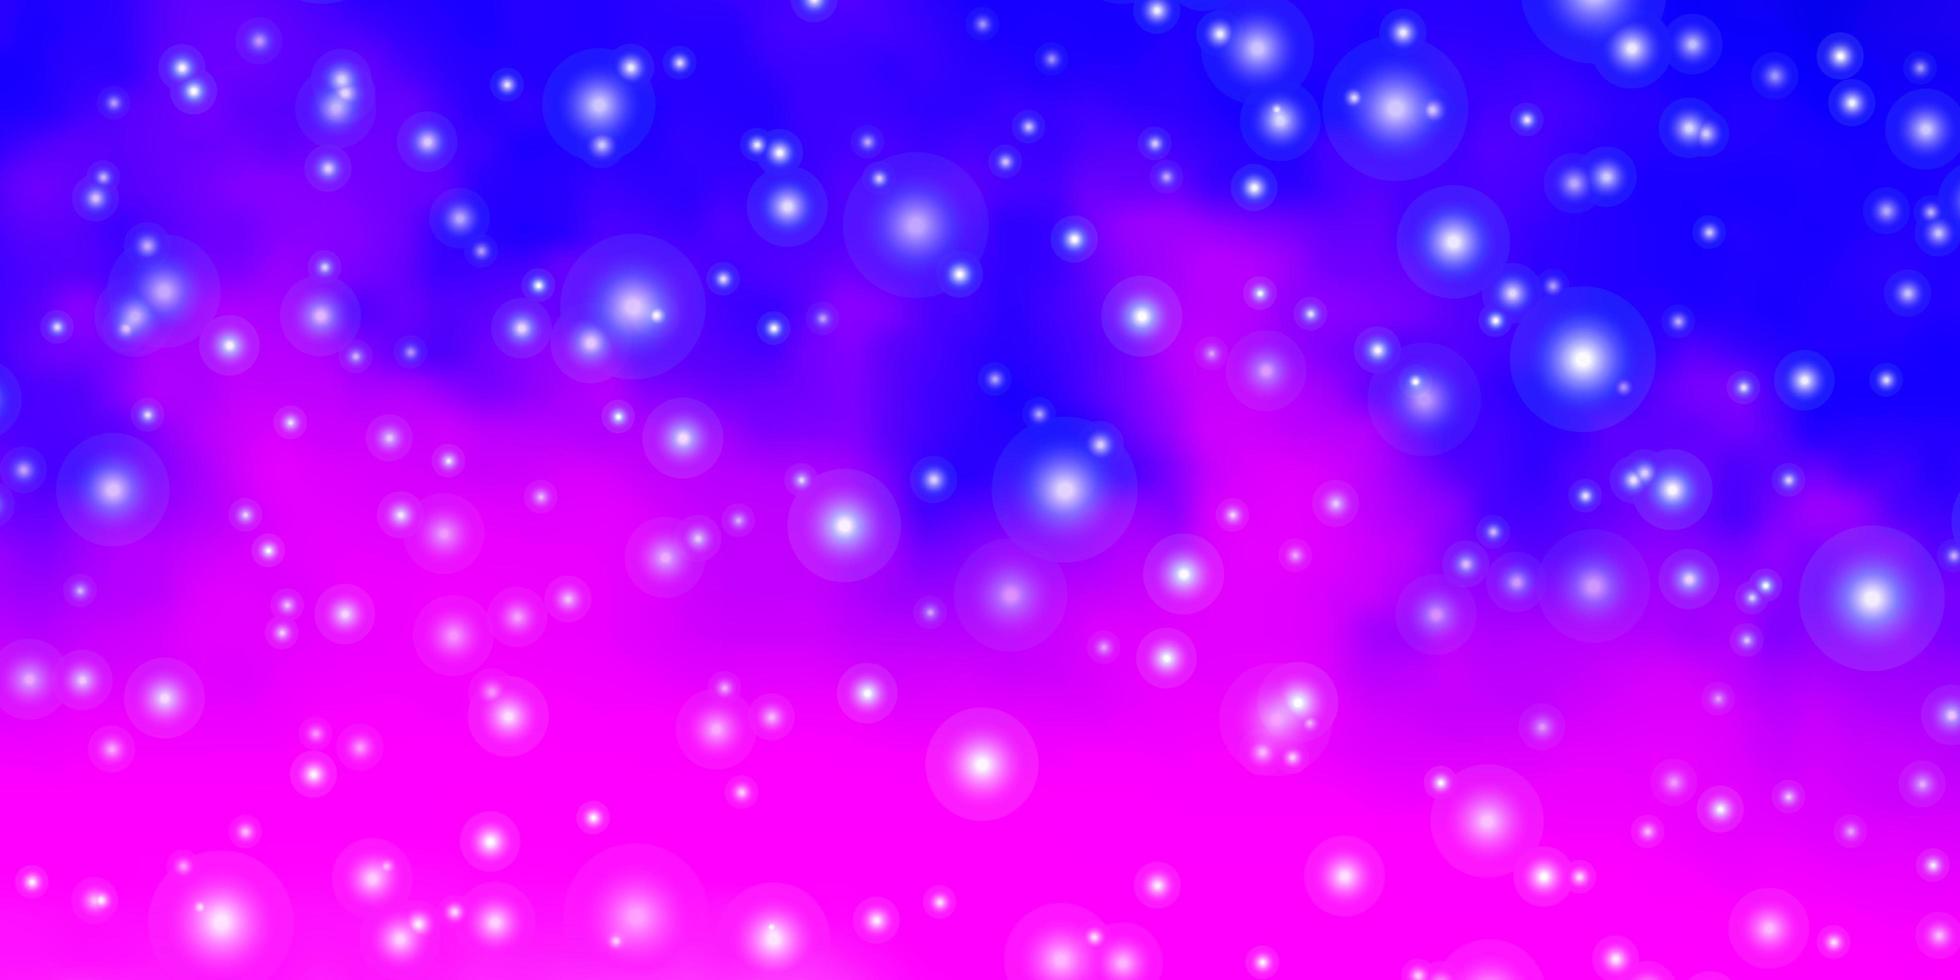 trama vettoriale rosa viola chiaro con bellissime stelle brillanti illustrazione colorata con motivo a stelle piccole e grandi per libretti pubblicitari di Capodanno new